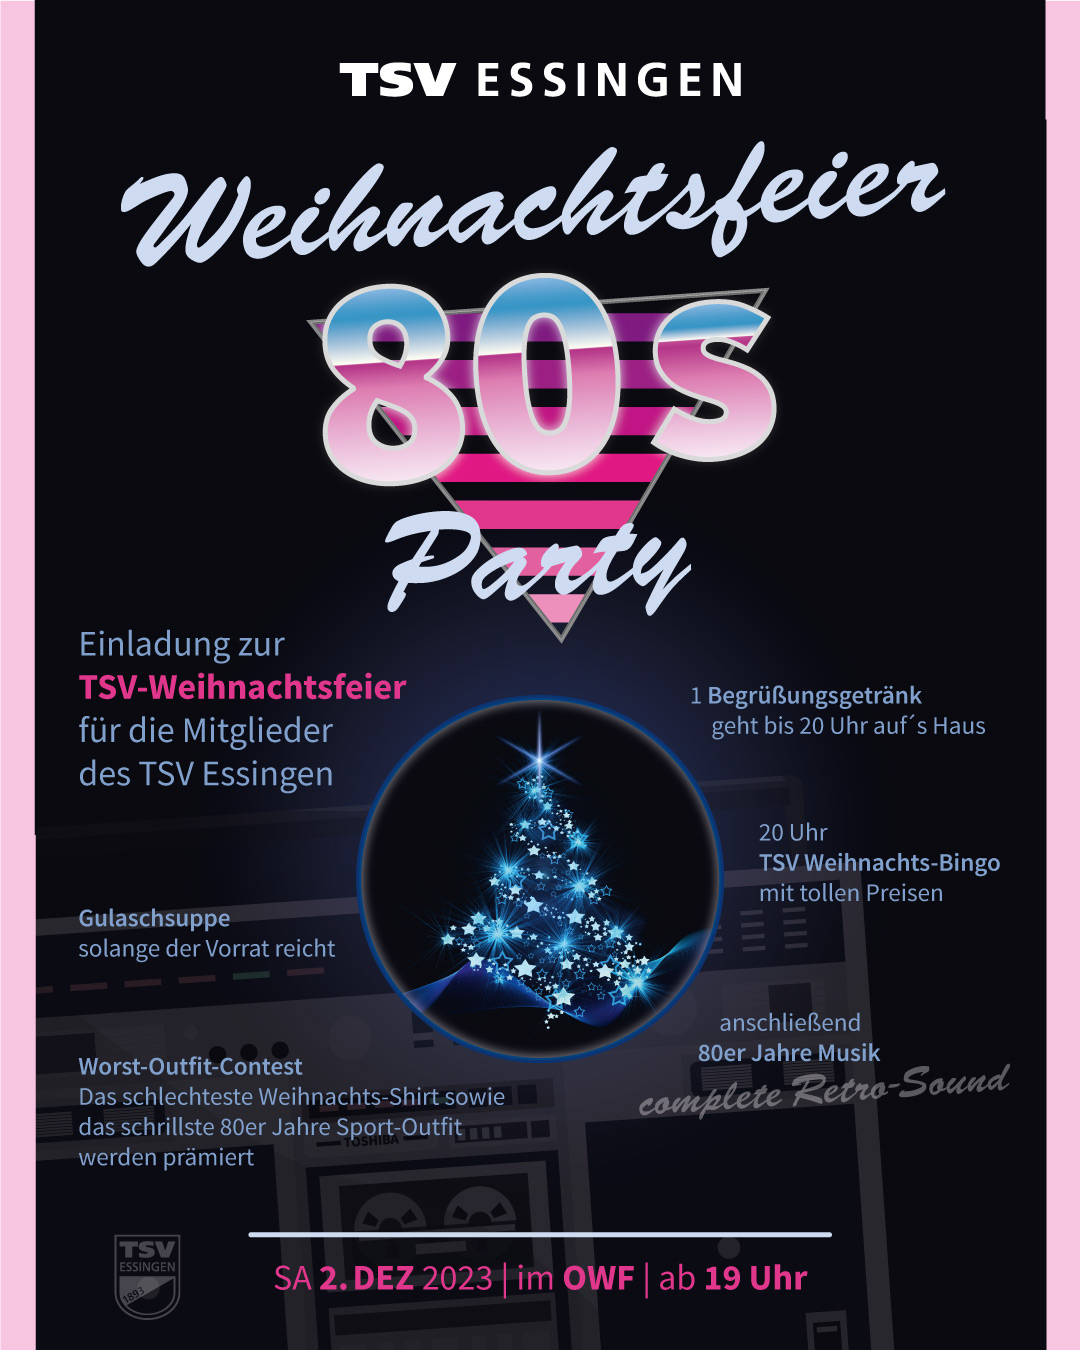 Flyer als Einladung zur TSV Weihnachtsfeier mit 80er Jahre Party.